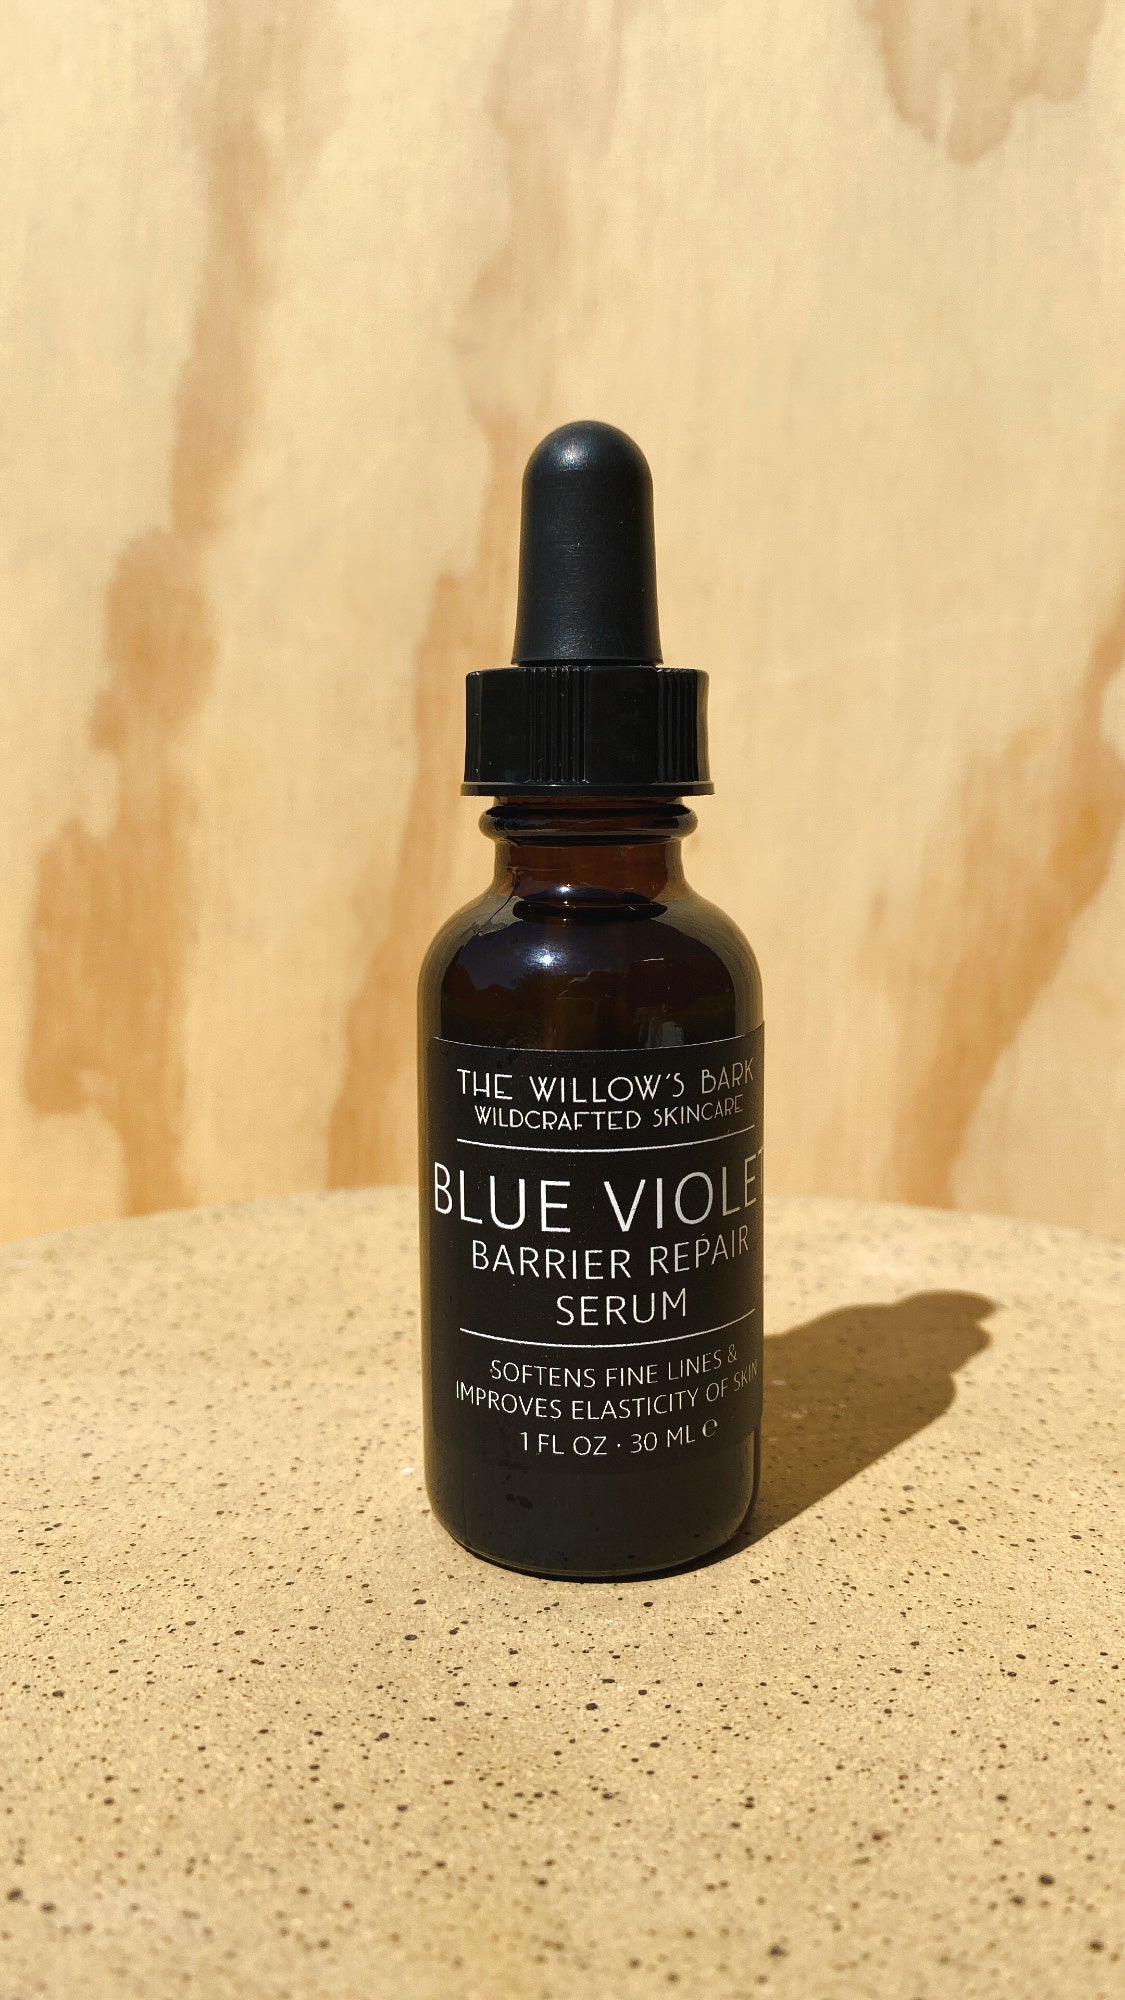 Blue Violet + Barrier Repair Serum